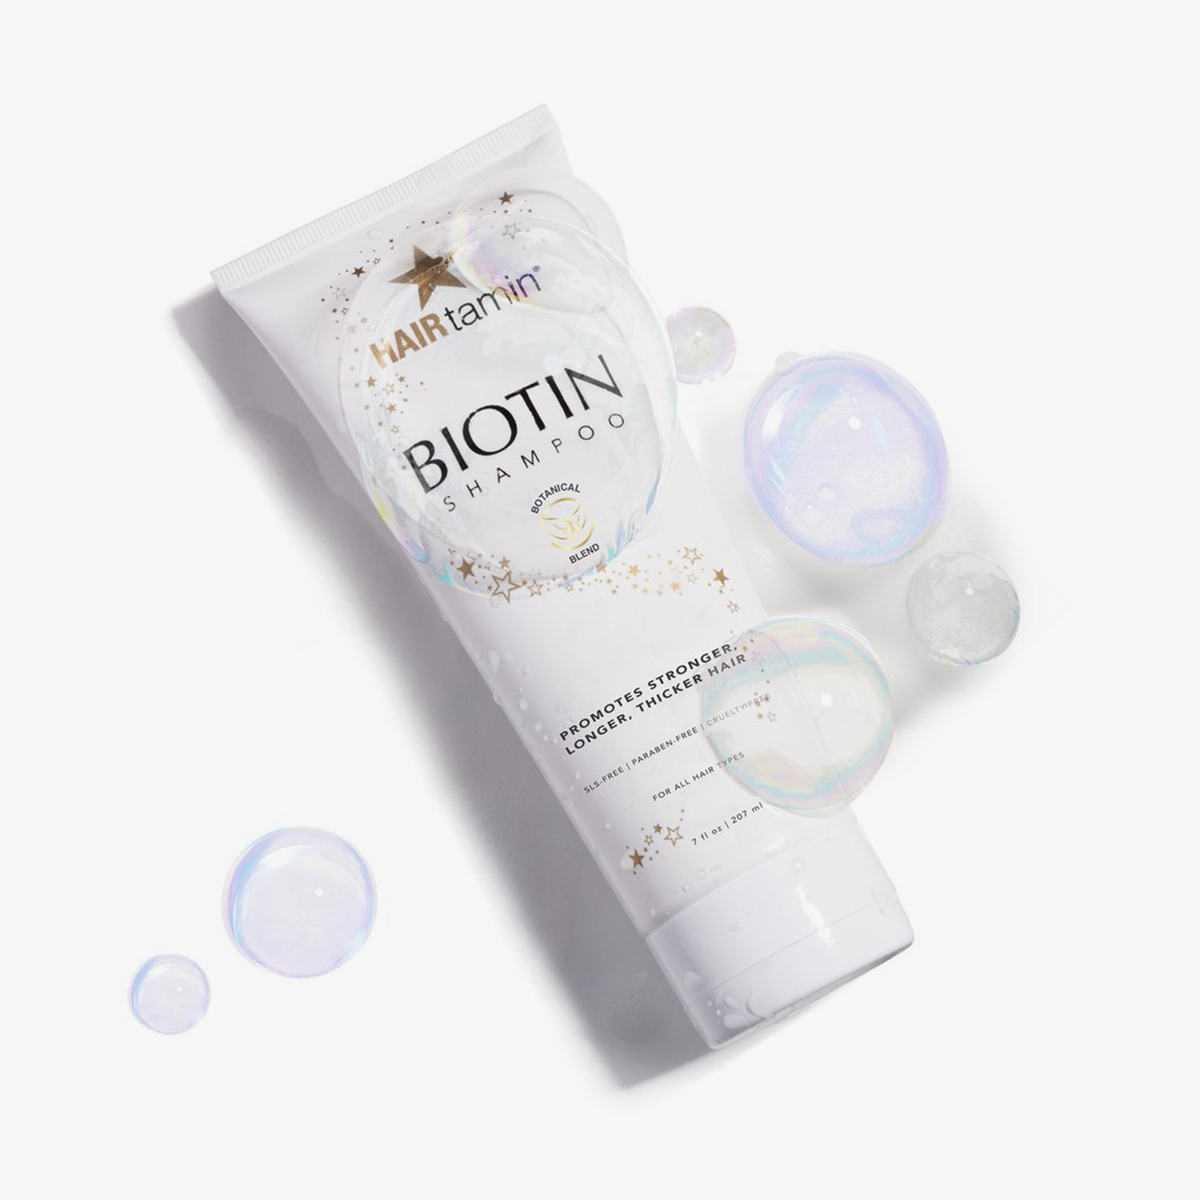 Eine Packung Biotin Shampoo von HAIRtamin vor weißem Hintergrund mit Seifenblasen